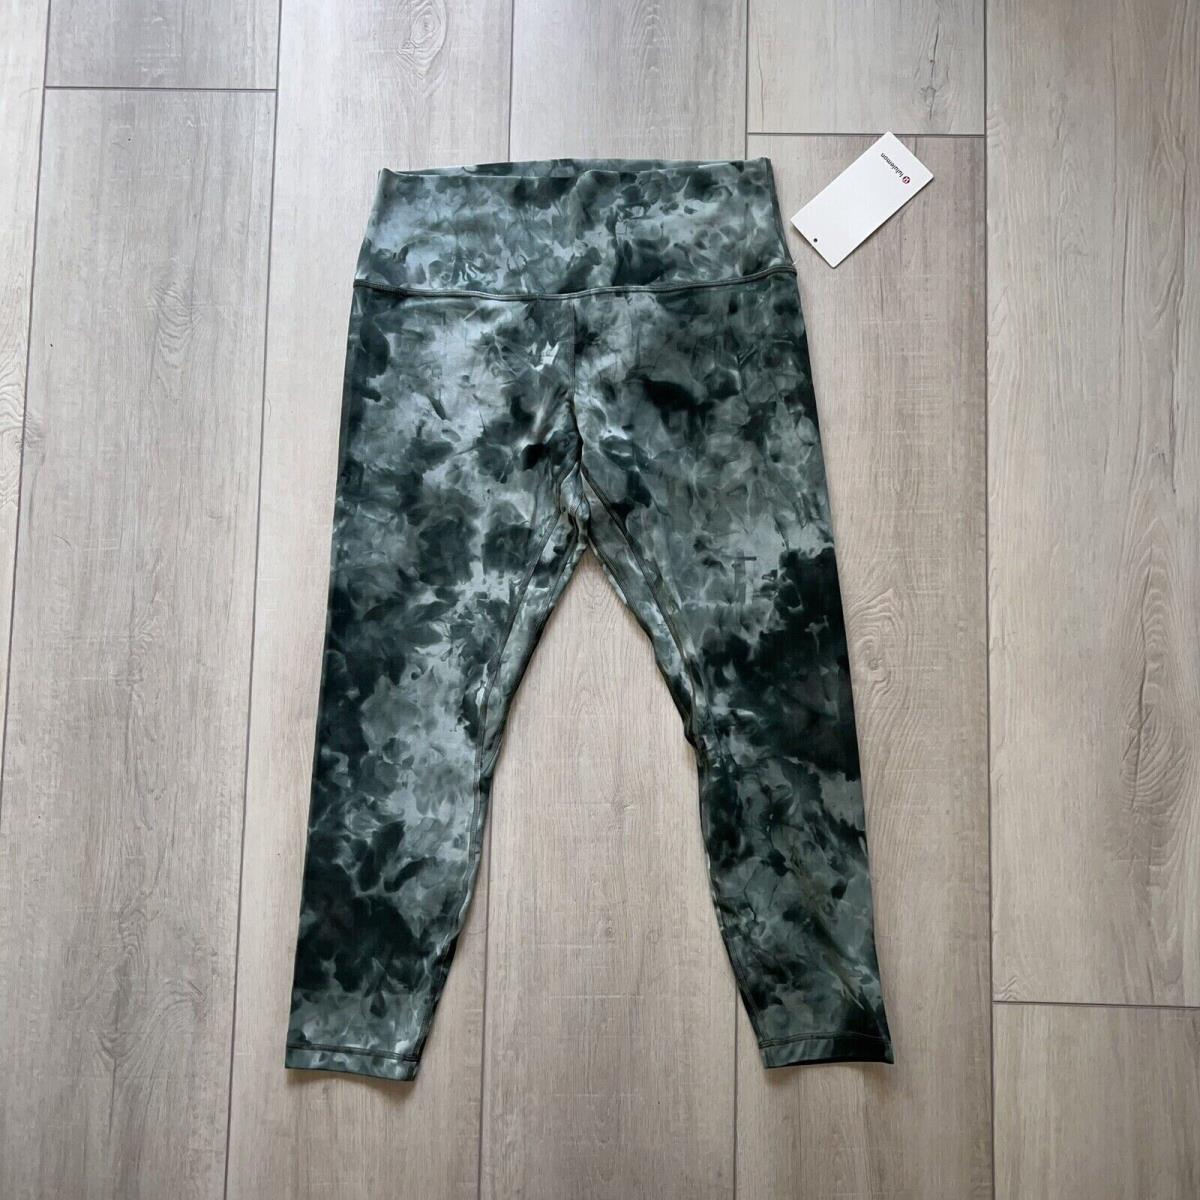 Lululemon clothing  - Green 0